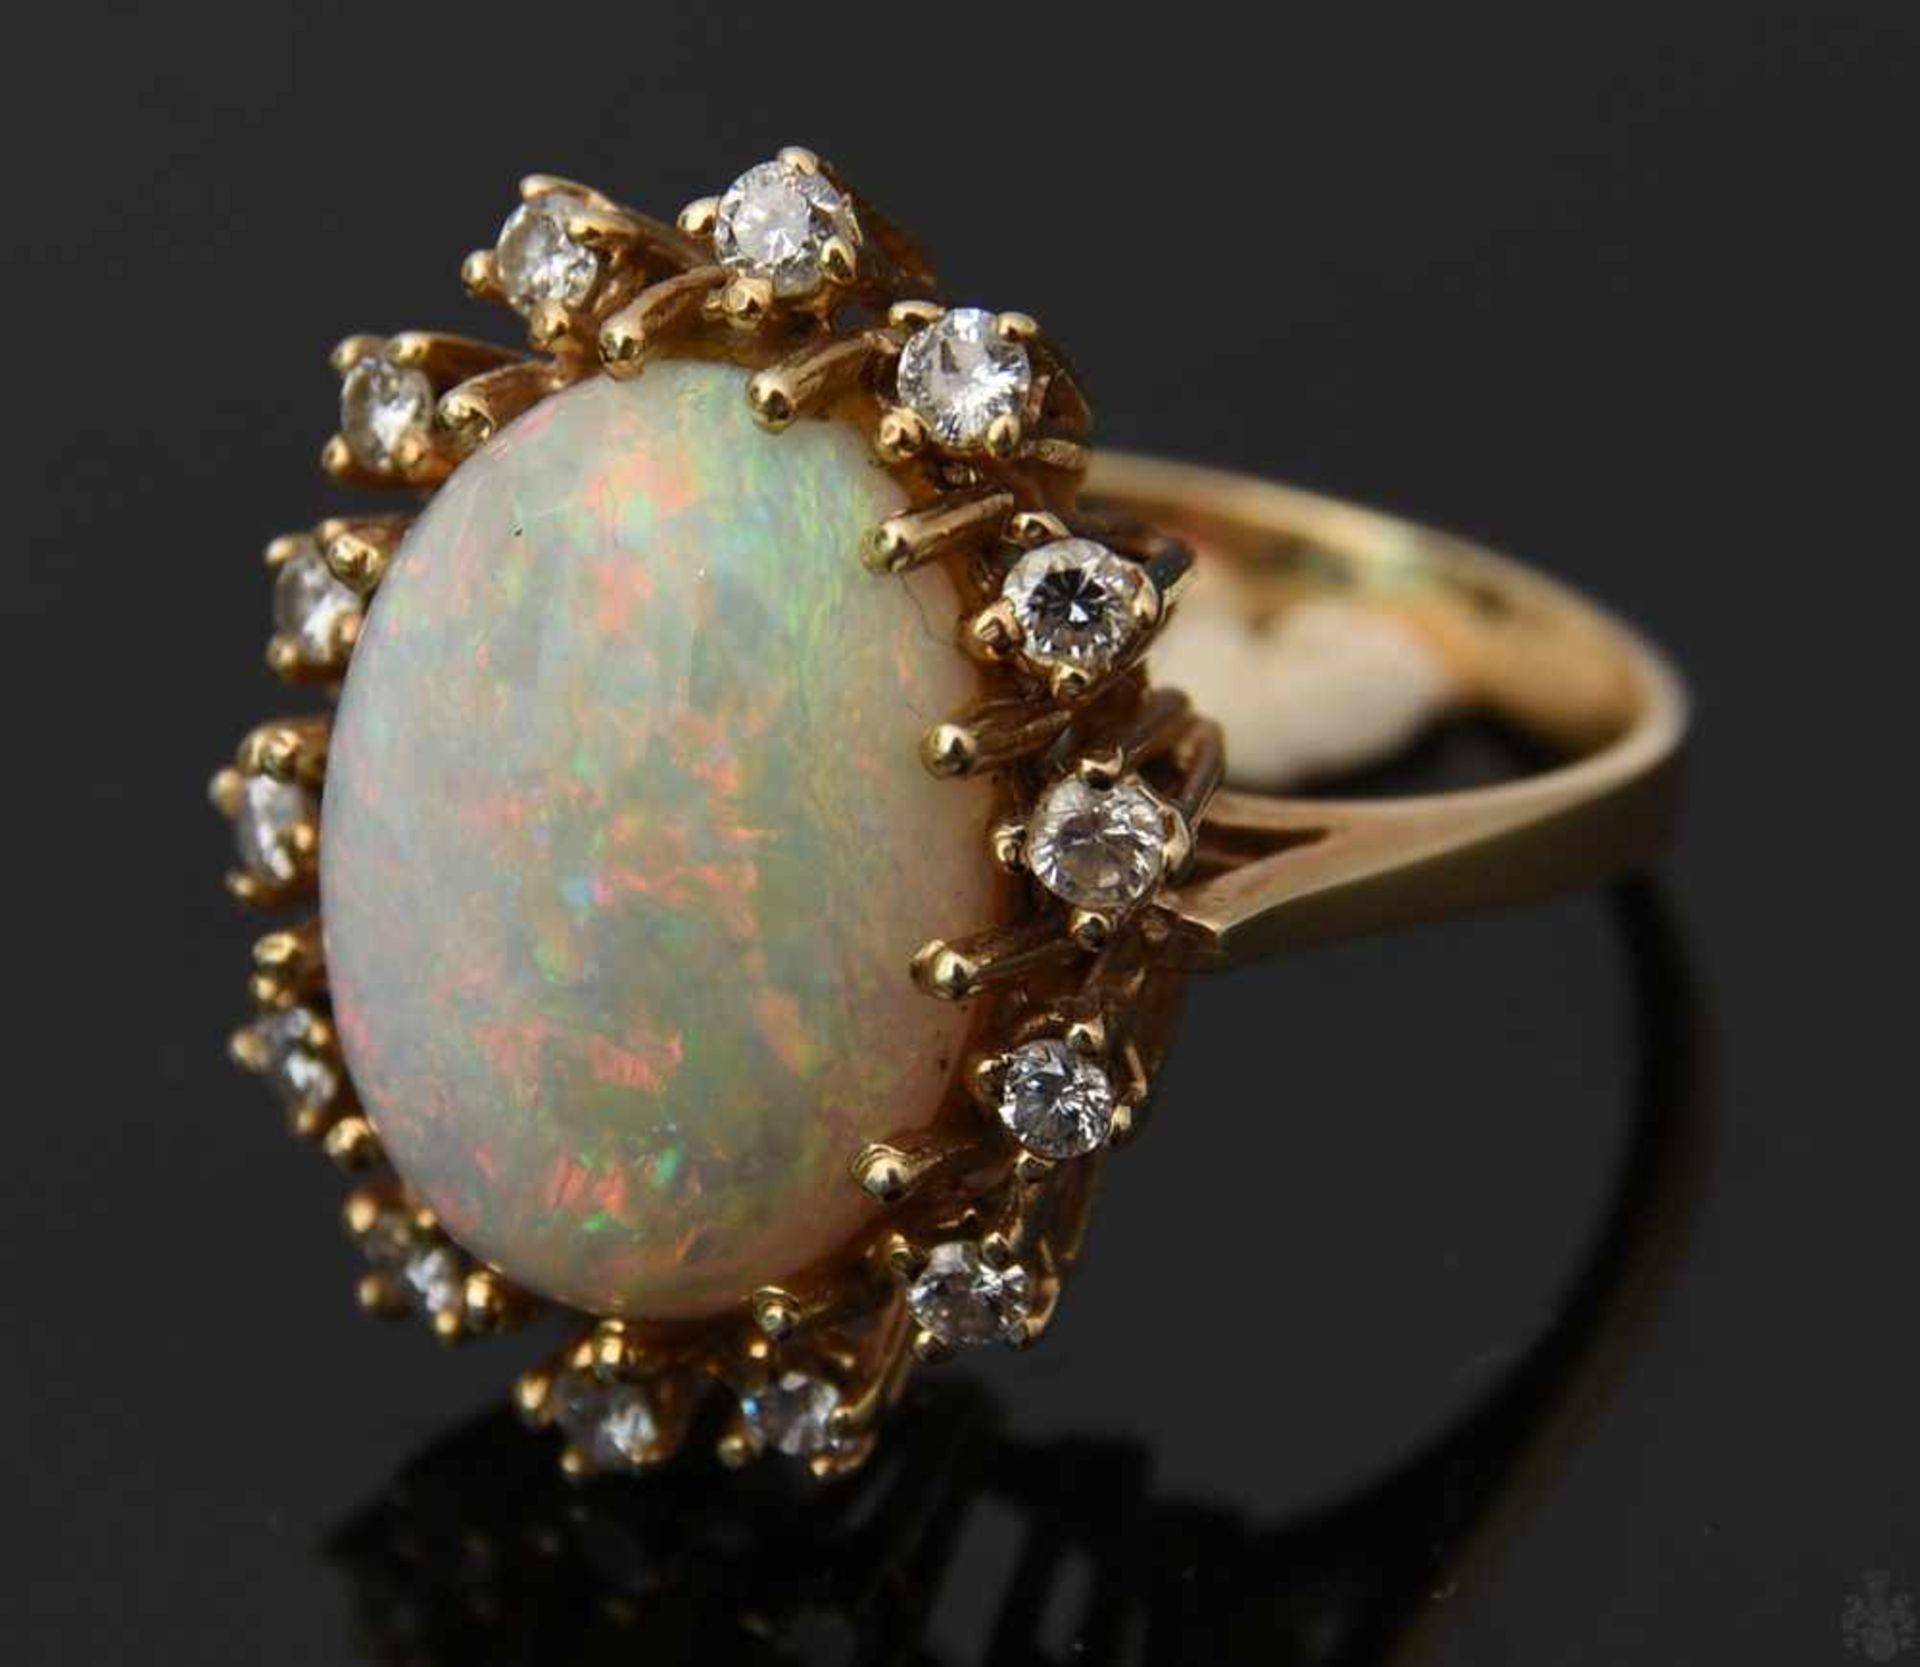 HALSKETTE MIT ANHÄNGER UND RING , mit Opalen und Brillianten.Oval geschliffene Opale mit umlaufenden - Image 3 of 9